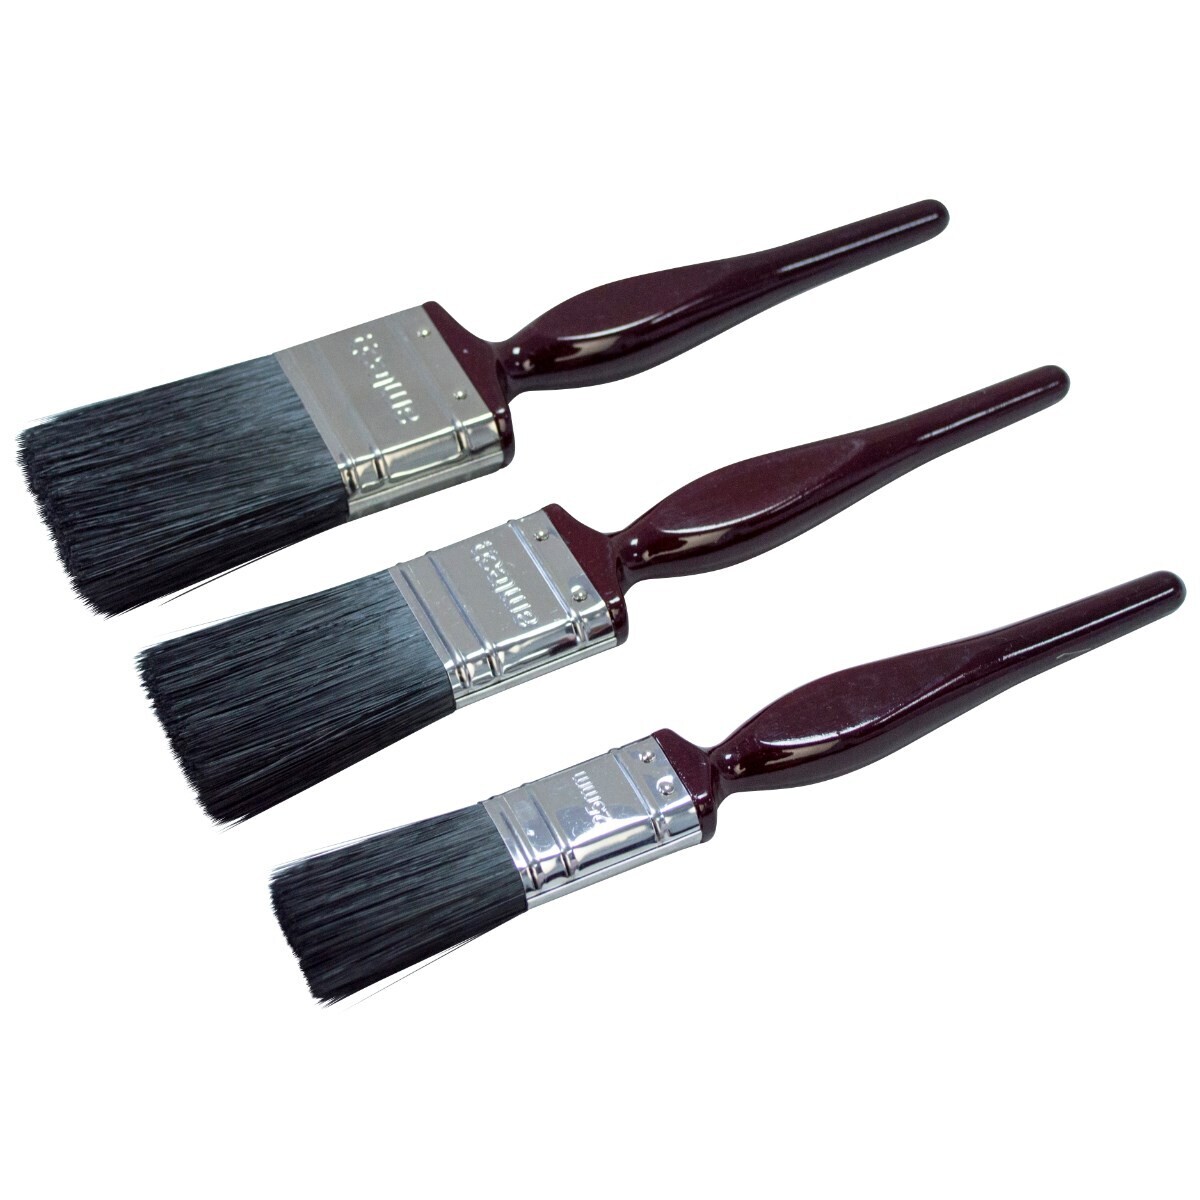 3pc no bristle loss paint brush set – classic handle